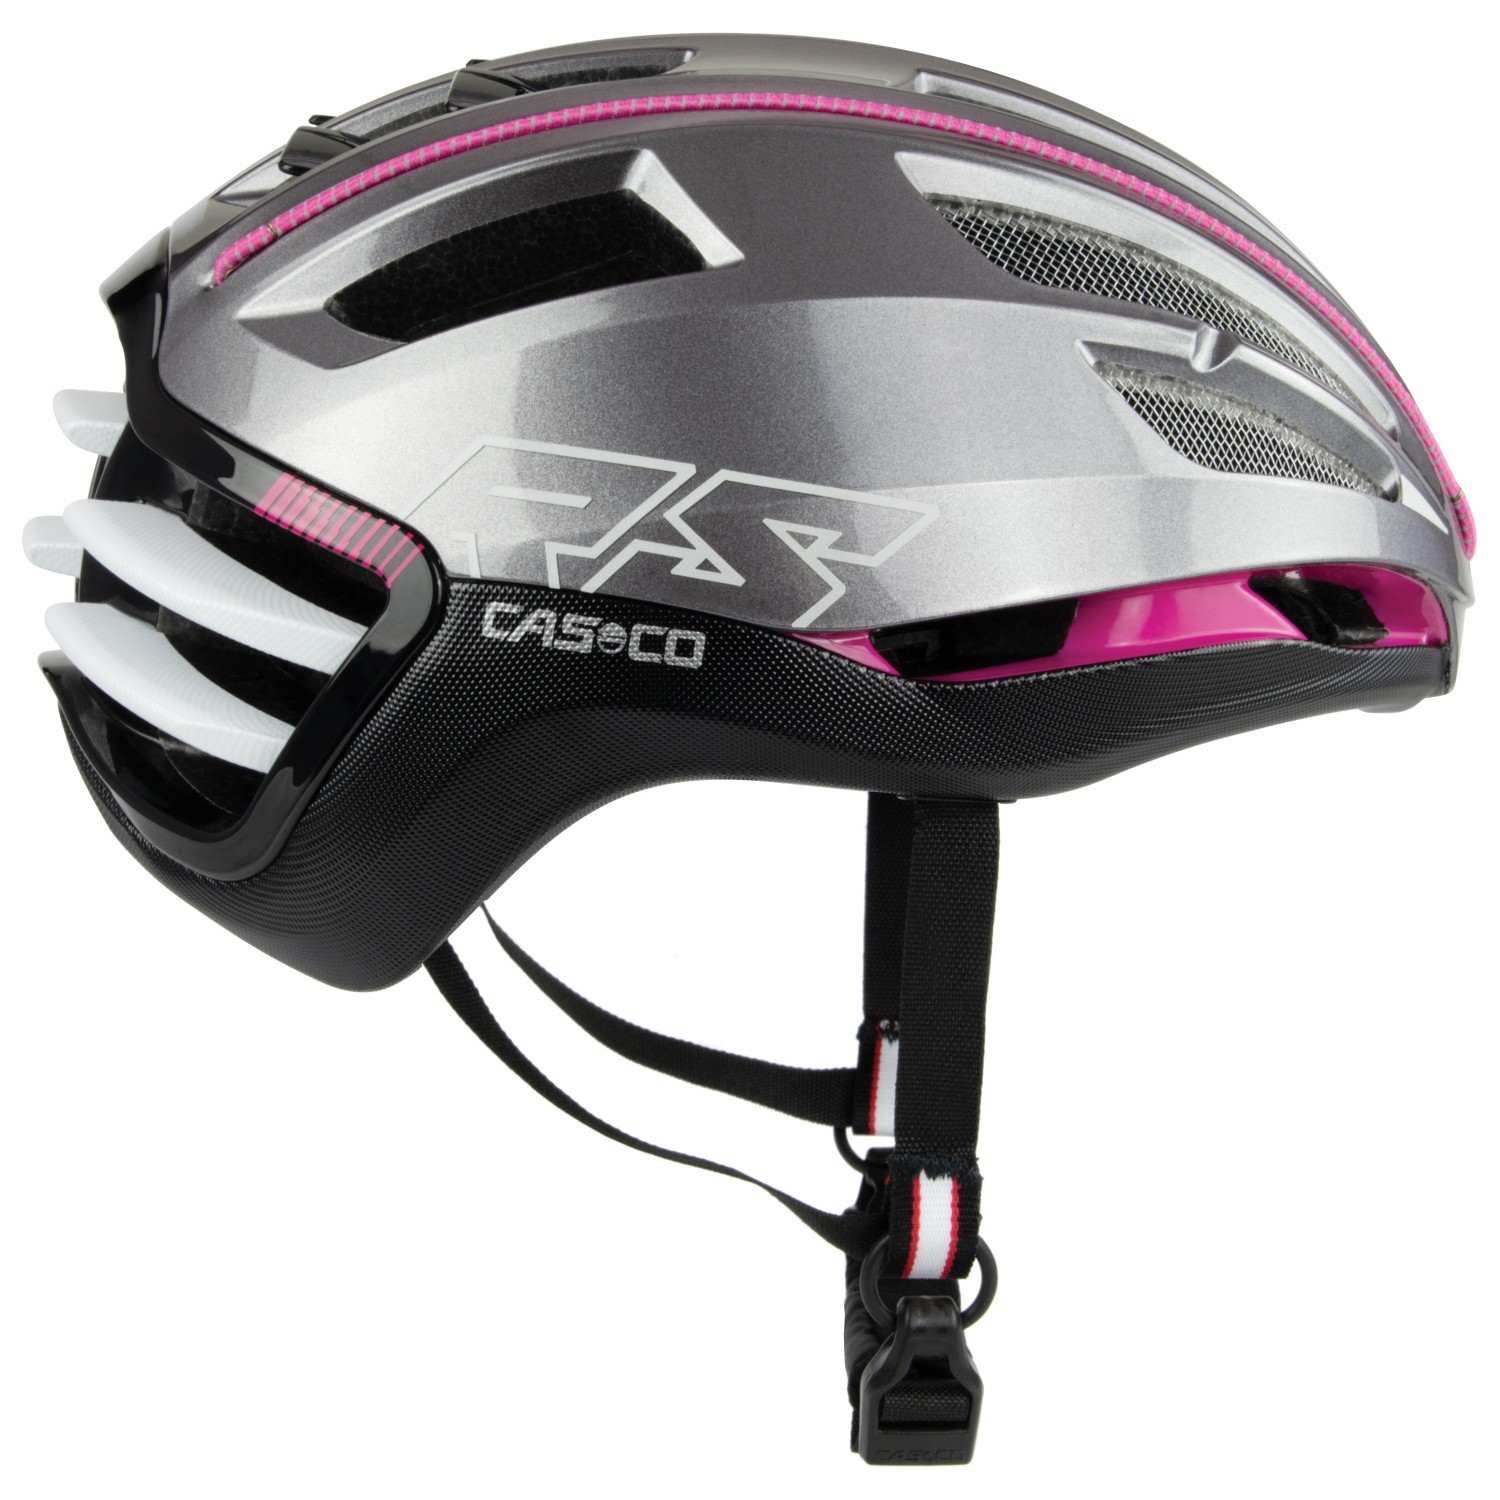 Велосипедный шлем Casco Speedairo2, цвет Grey/Pink аксессуары casco для мотоцикла шлем протектор для носа вентиляционное отверстие для k1 k3sv защитный шлем аксессуары для мотоциклетного шлема